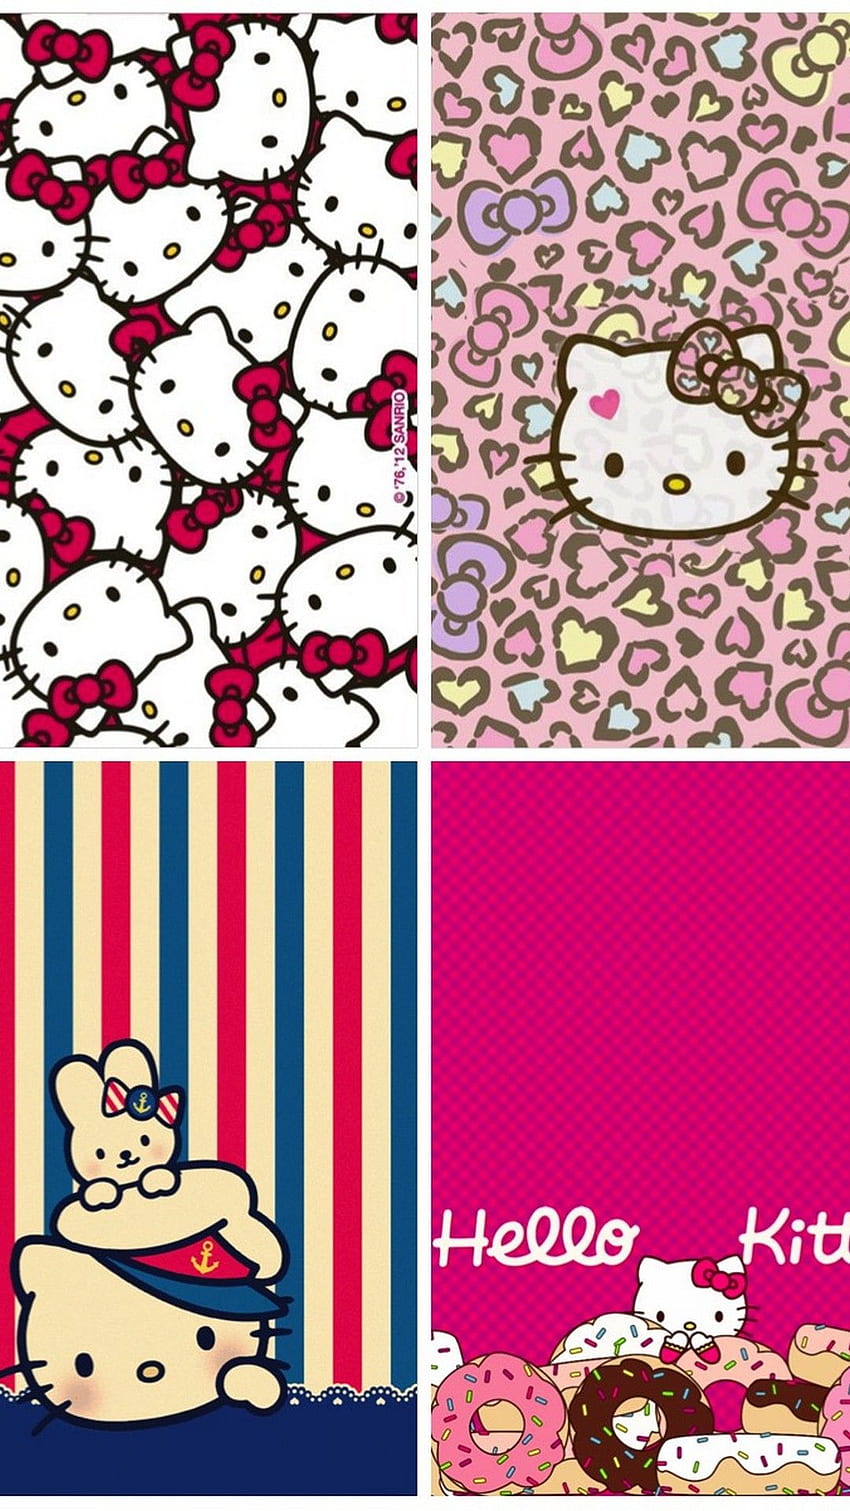 Image by Kimberly Rochin  Hello kitty backgrounds, Hello kitty iphone  wallpaper, Hello kitty wallpaper hd